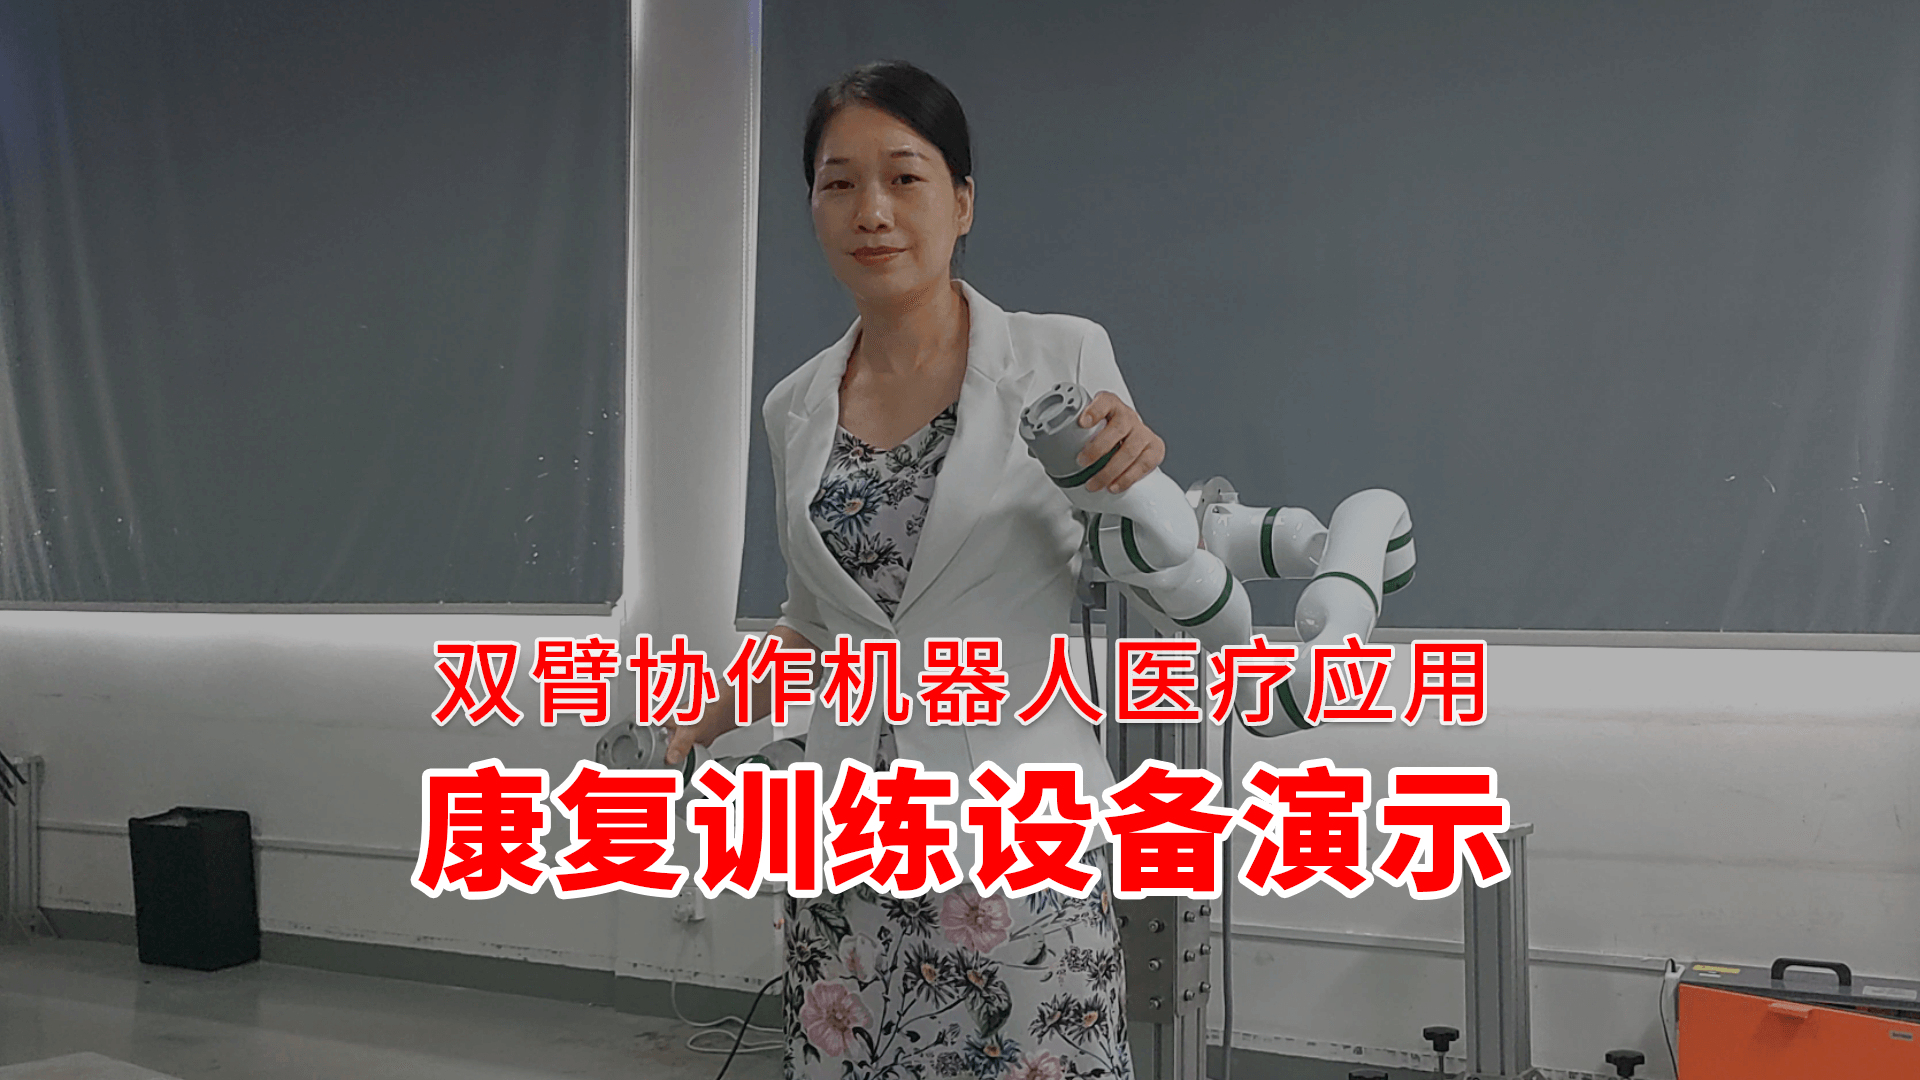 【雙臂協作機器人醫療應用：康復訓練設備演示】
泰科智能雙臂協作機器人，體積小巧，可裝配到醫療設備上使用